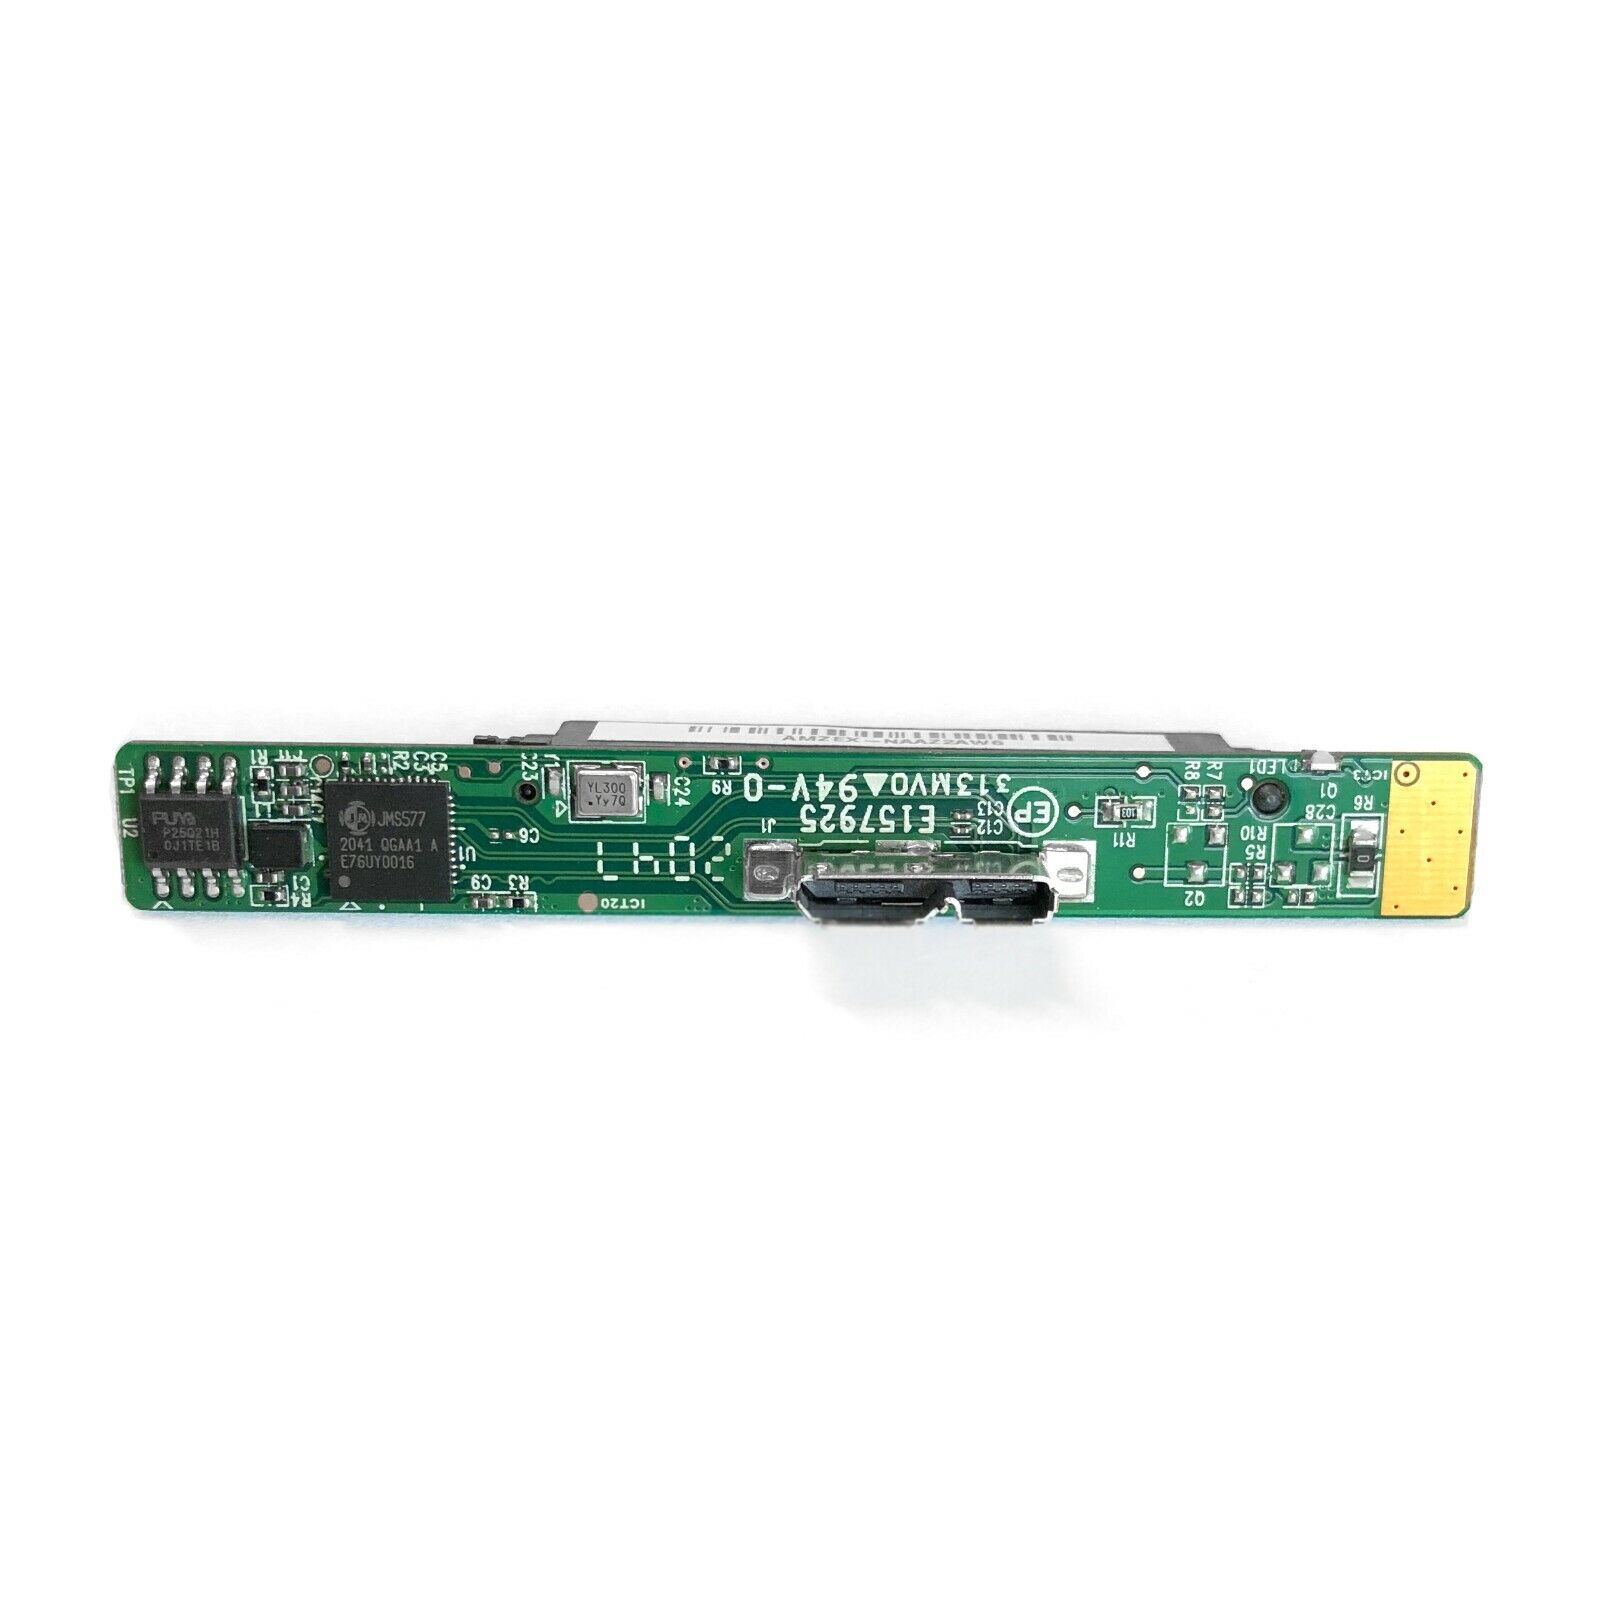 Seagate E157925 JMicron SATA USB 3.0 Controller PCB Circuit Board for HDD SSD